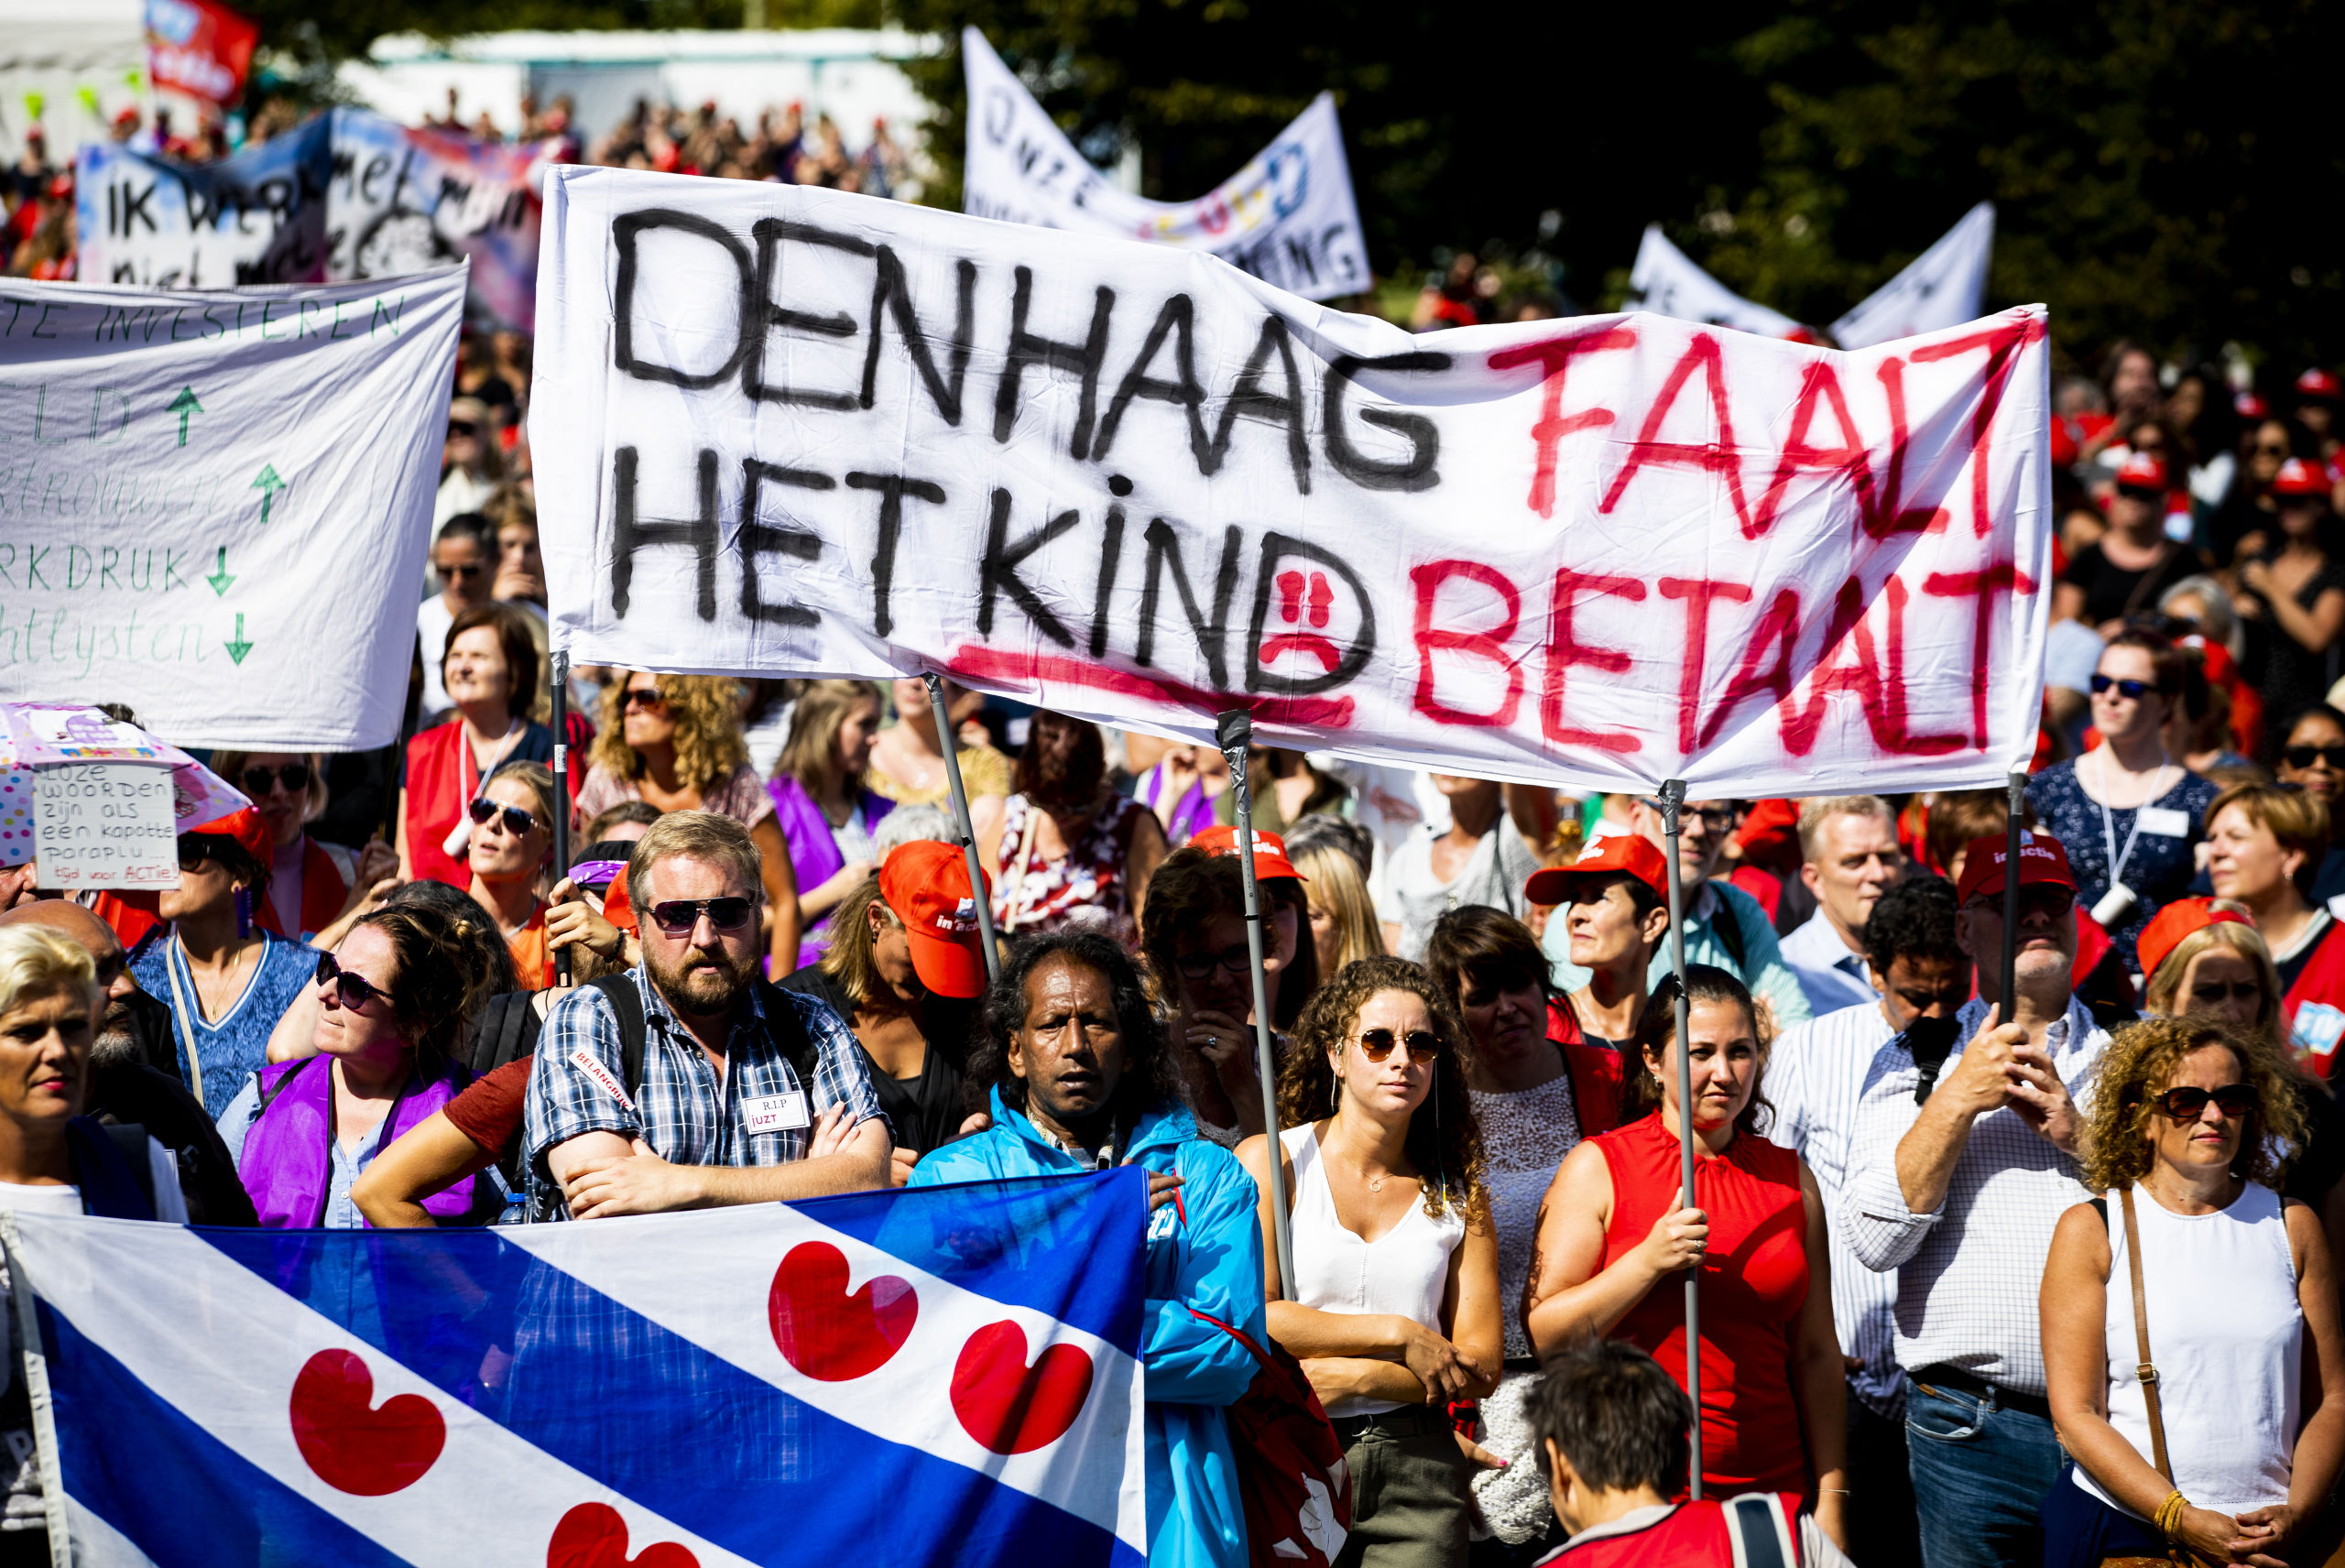 DEN HAAG - Jeugdzorgwerkers staken voor het eerst in de Nederlandse geschiedenis vanwege crisis in de jeugdzorg. De medewerkers eisen meer geld voor jeugdzorg, minder administratiedruk, een einde aan de inkoopwaanzin en fatsoenlijke arbeidsvoorwaarden voor de 30.000 jeugdzorgwerkers. 